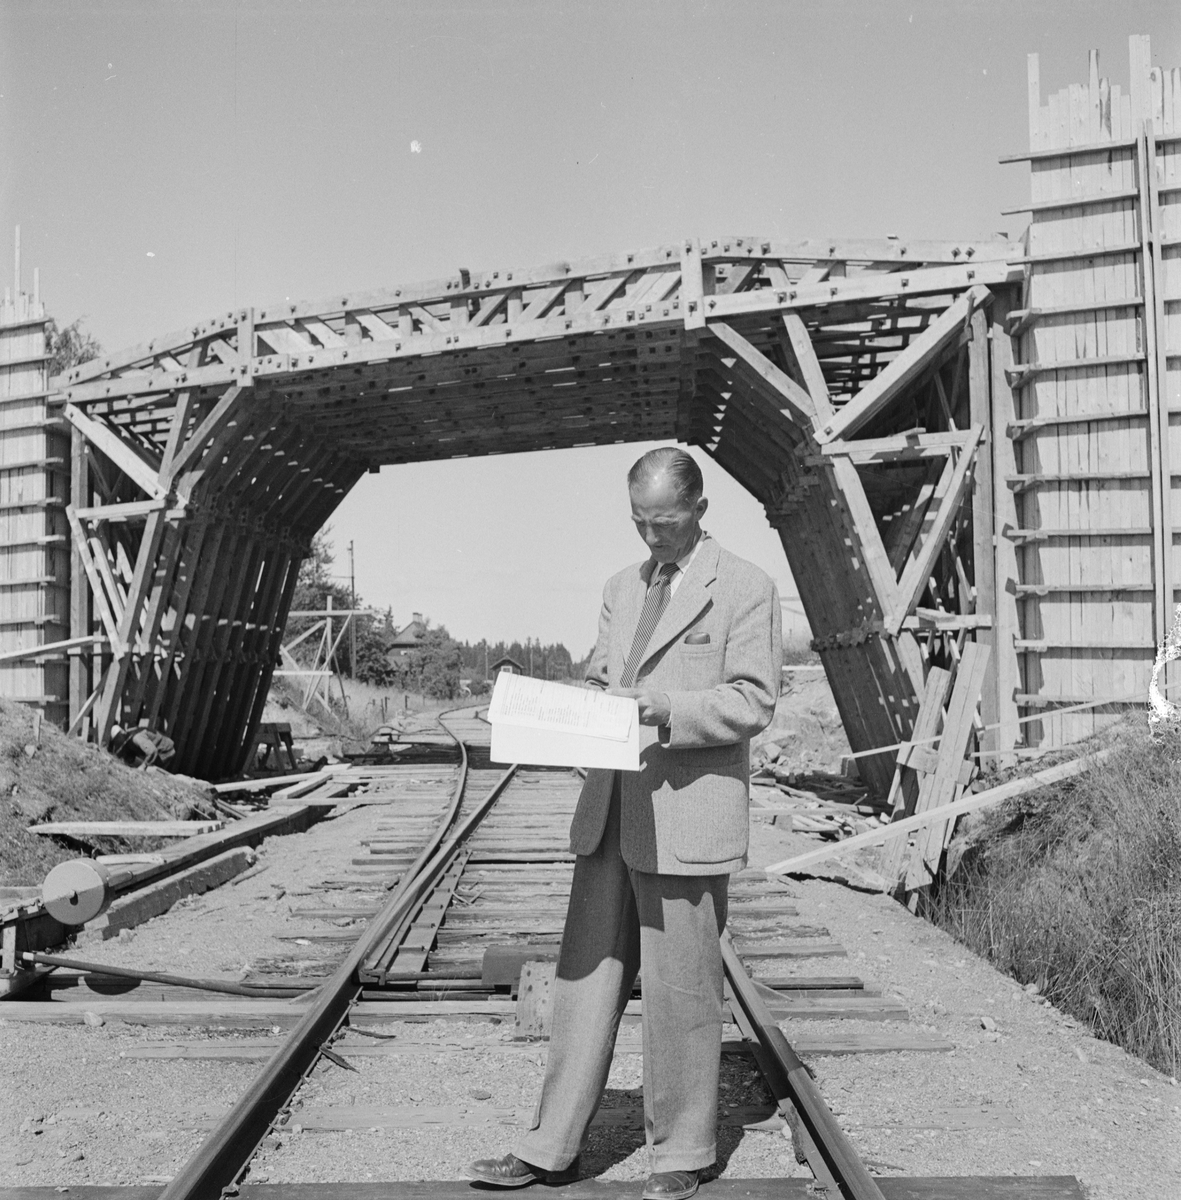 Vägdagen - man på järnvägsspår, Uppland 1954